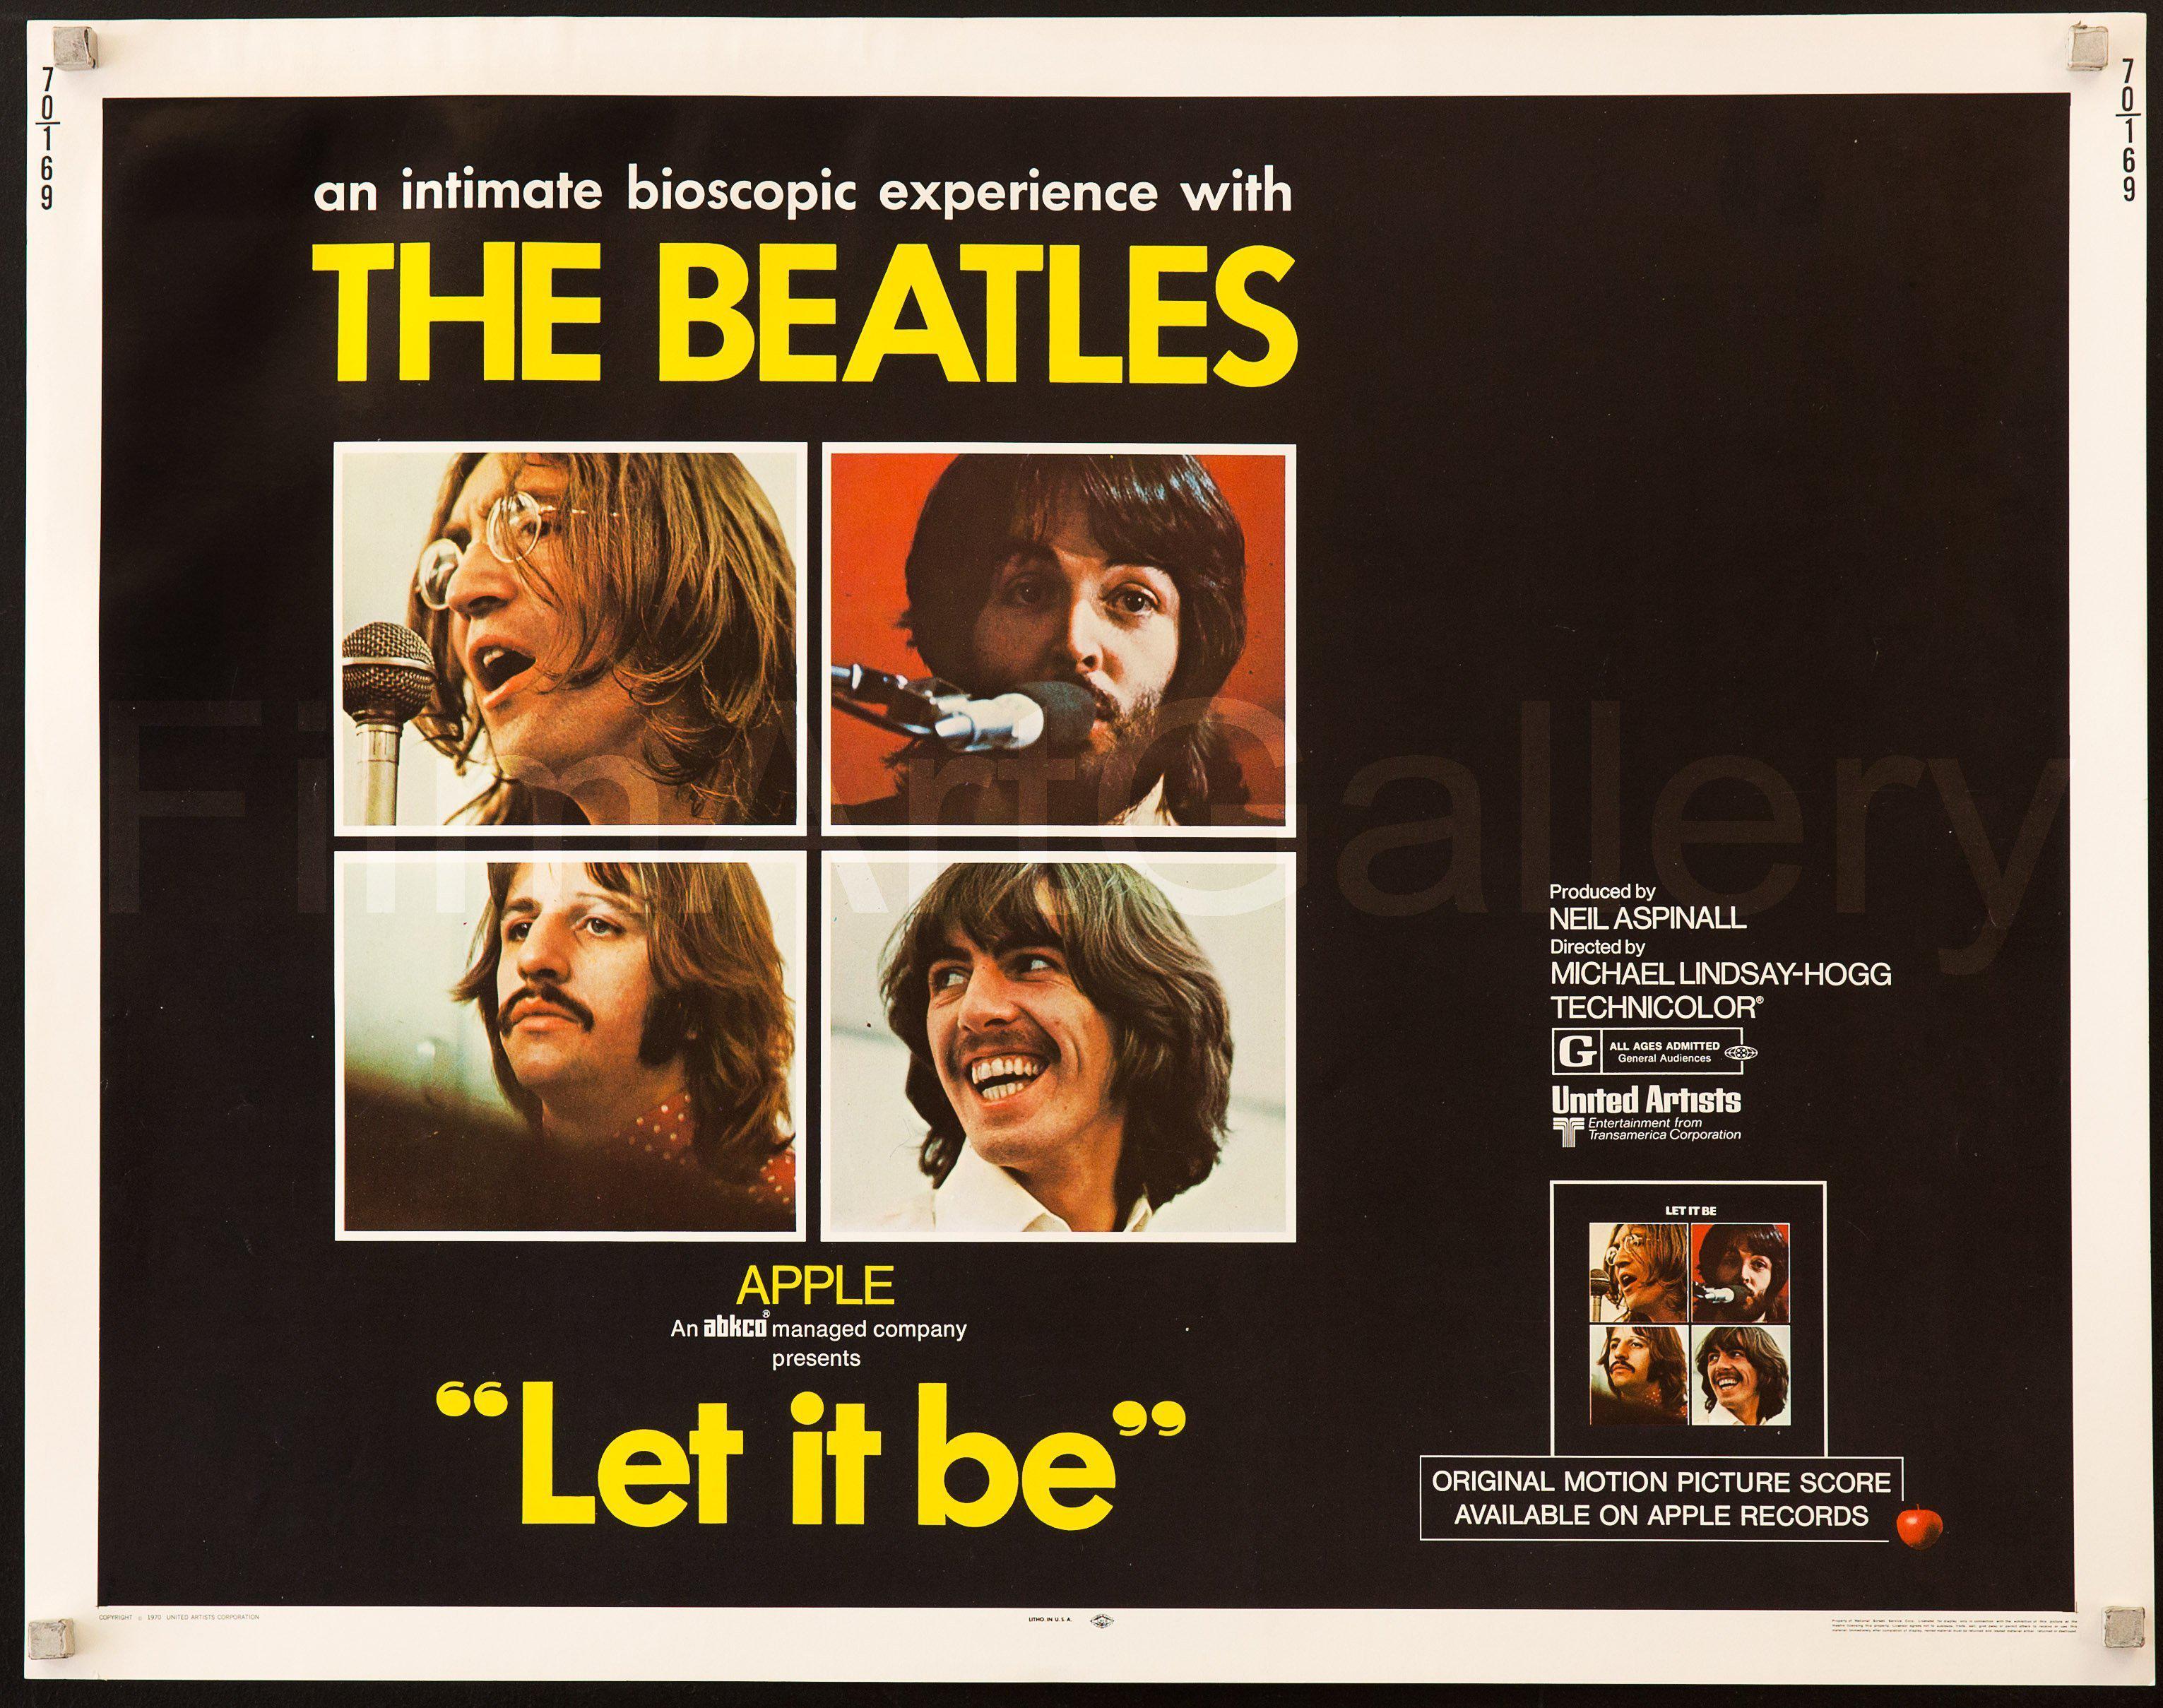 Лет ит би слушать. The Beatles Let it be обложка. The Beatles Let it be 1970 обложка. The Beatles - Let it be. Let it be обложка альбома.